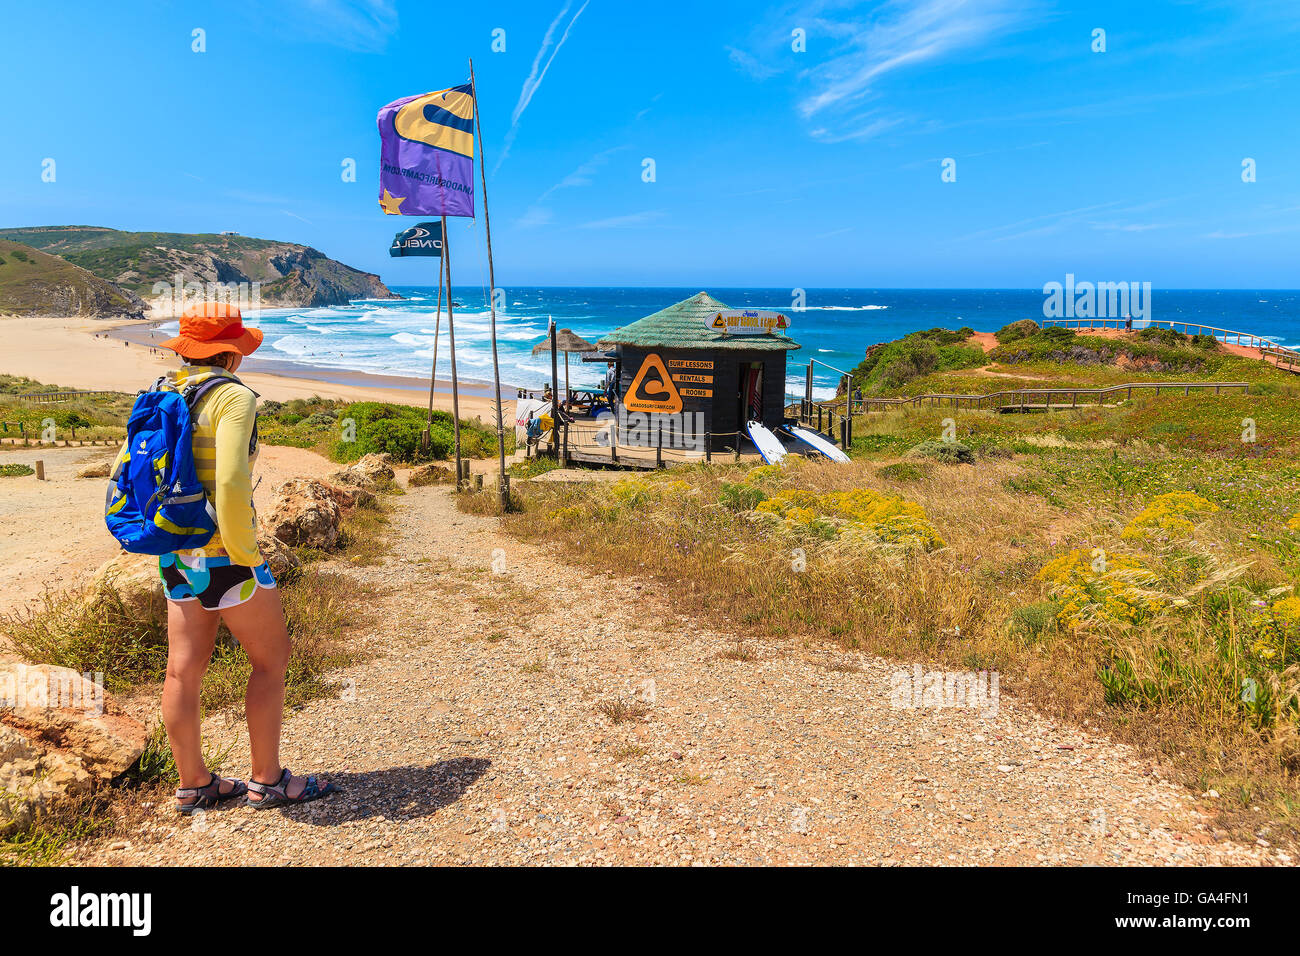 AMADO BEACH, PORTUGAL - 15. Mai 2015: Junge Frau Tourist am Wanderweg nach Praia do Amado Beach im Frühjahr, die Region Algarve, Portugal. Diese Gegend ist berühmt Surfen in ganze Portugal statt. Stockfoto